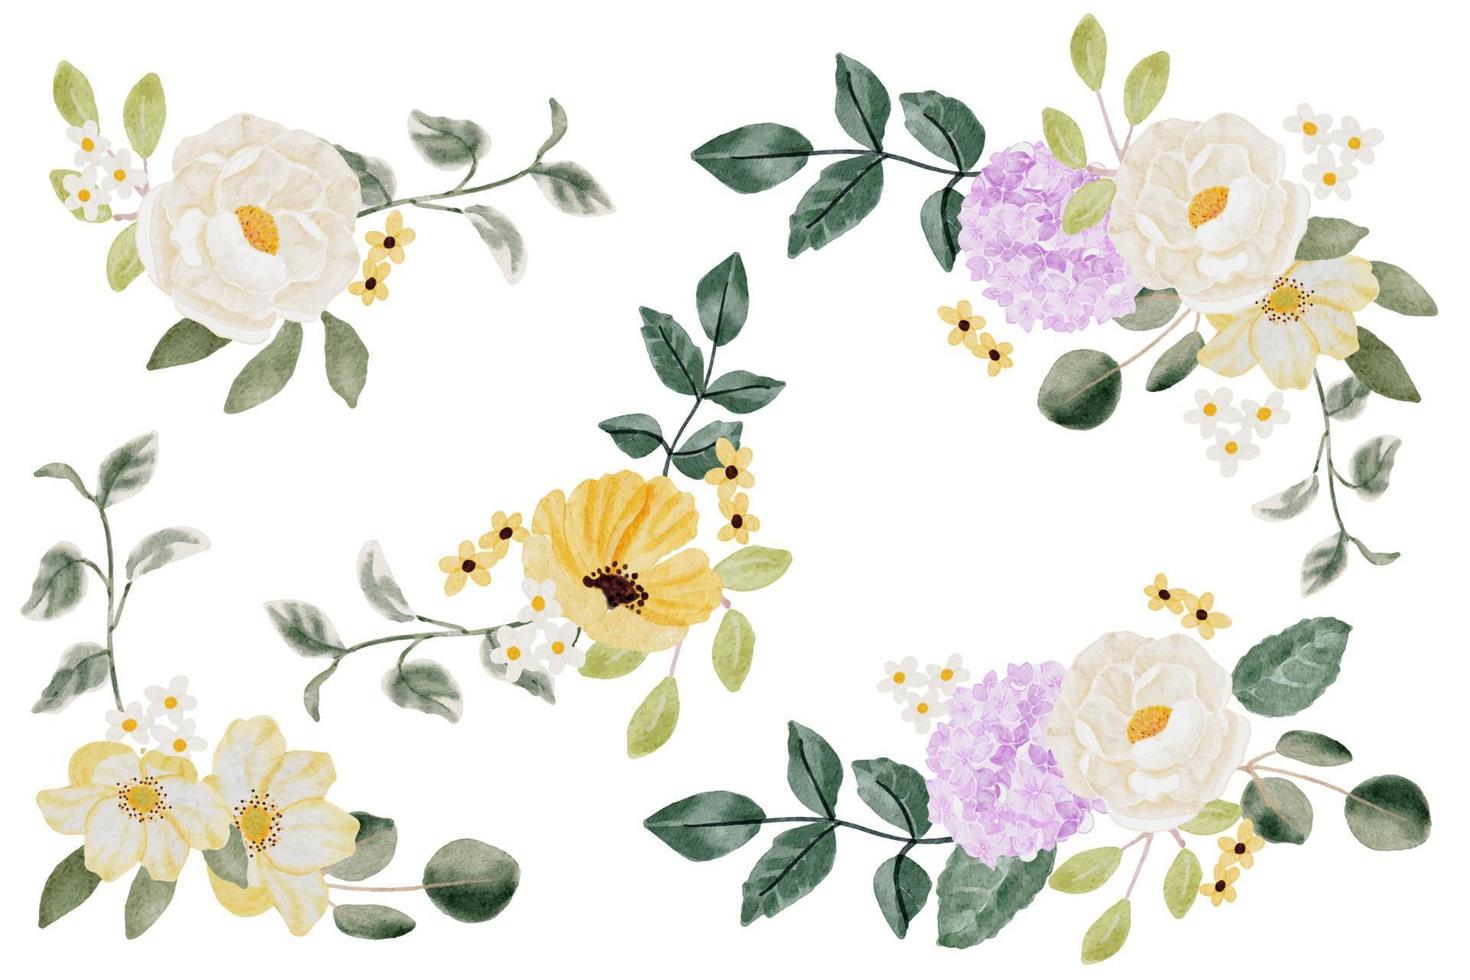 Aquarell-Hortensie und wilde Blumenstrauß-Sammlung isoliert auf weißem Hintergrund digitale Malerei vektor